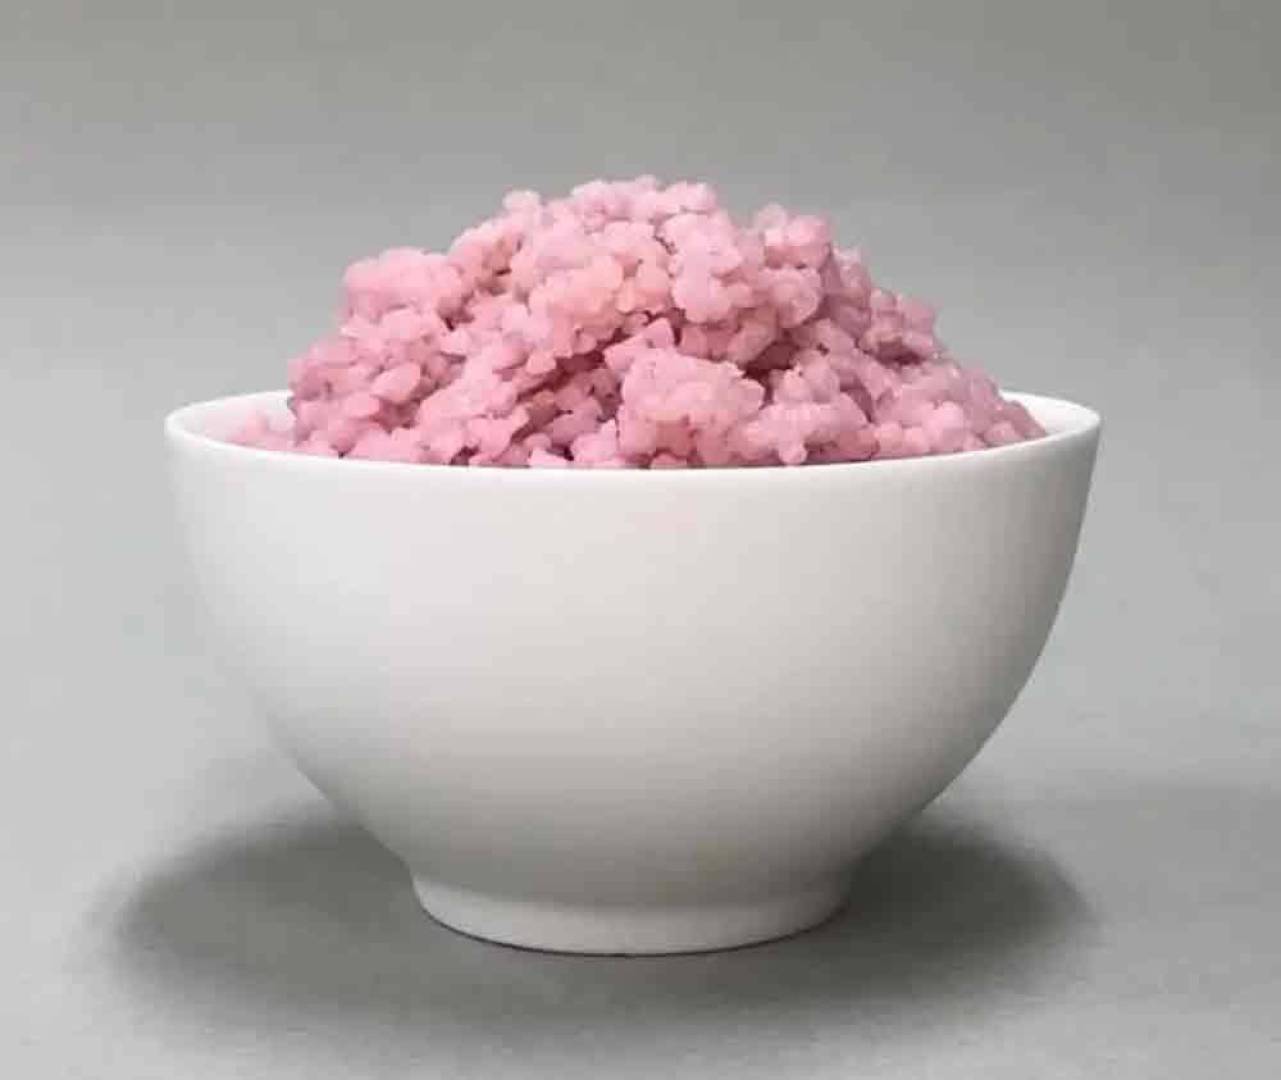 زراعة غذاء هجين مبتكر يدمج اللحم الحيواني في الأرز